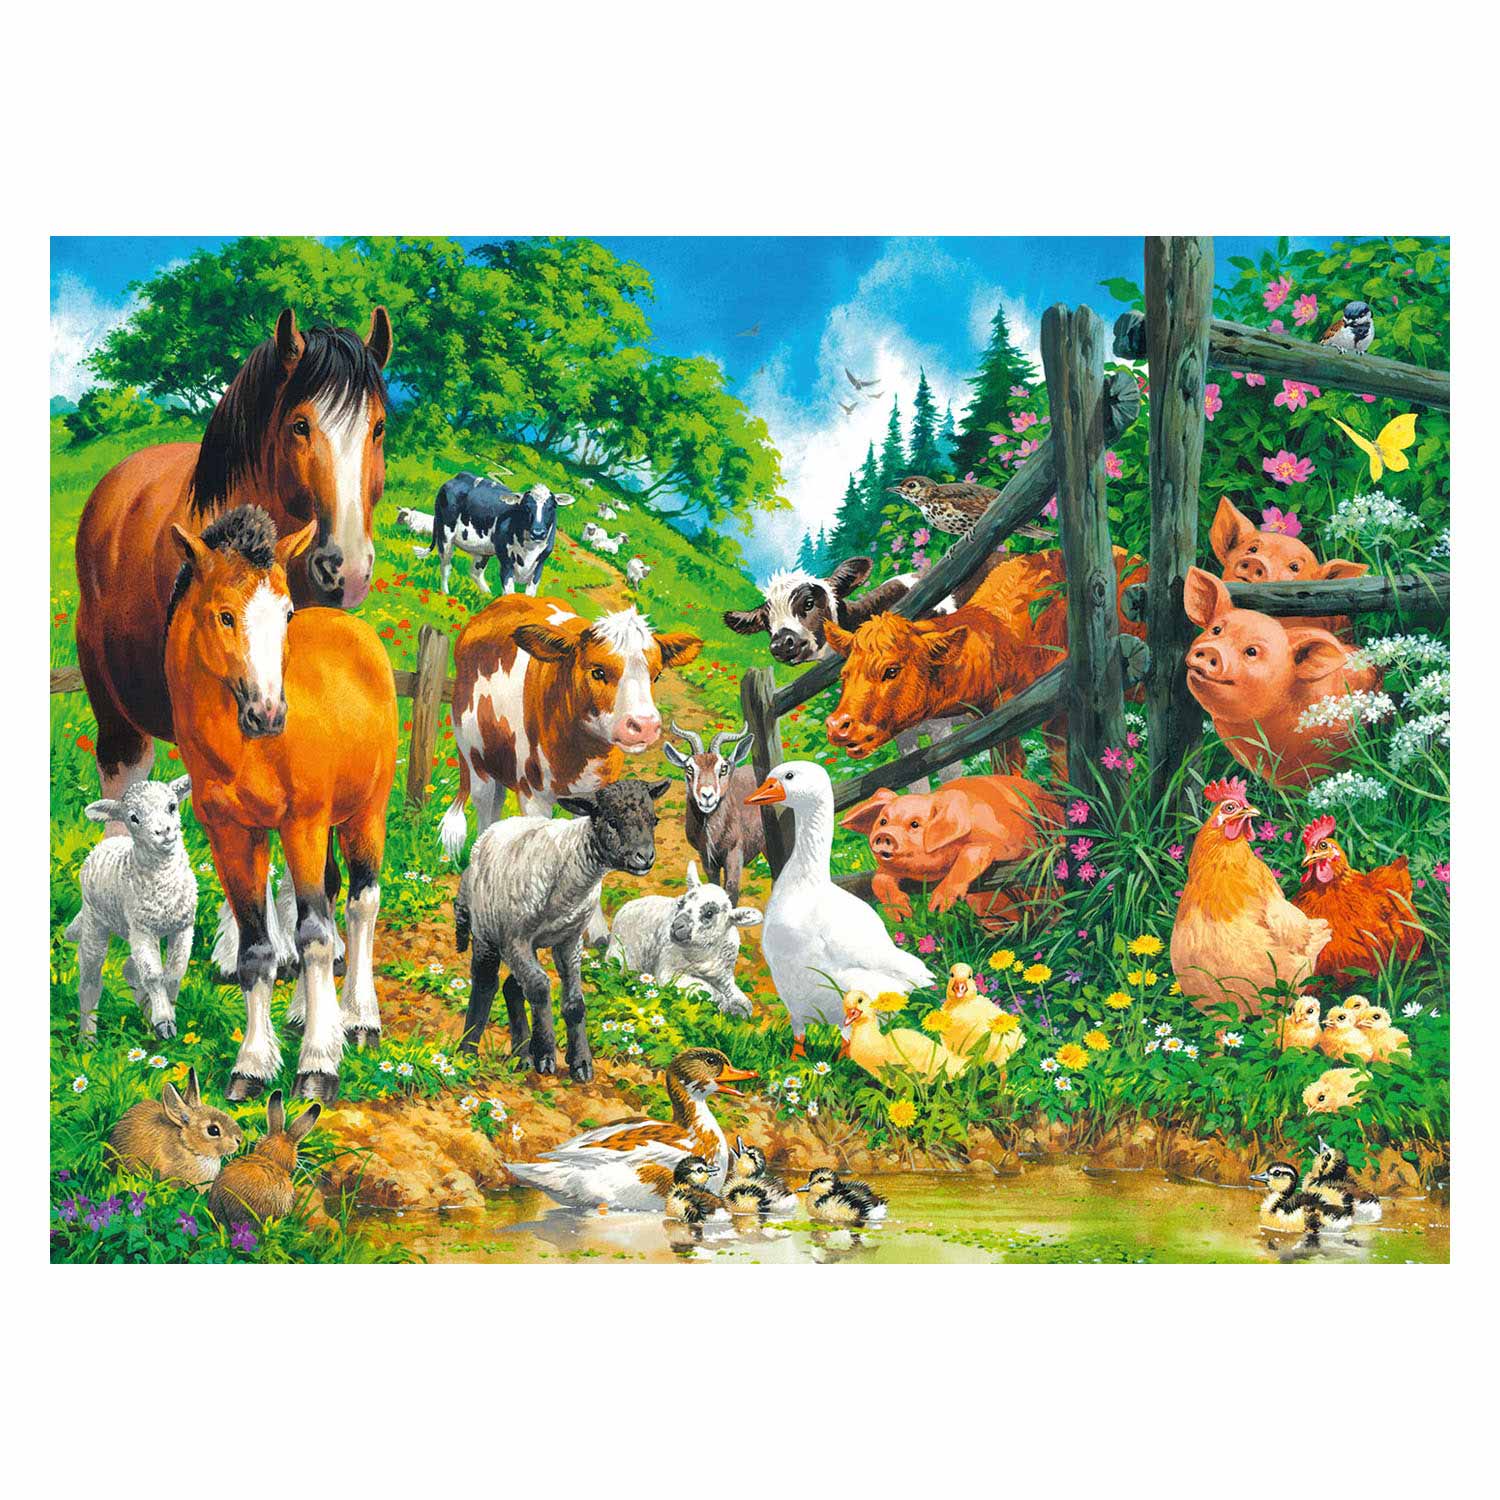 Ravensburger Puzzle Rassemblement d'animaux, 100 pièces. XXL